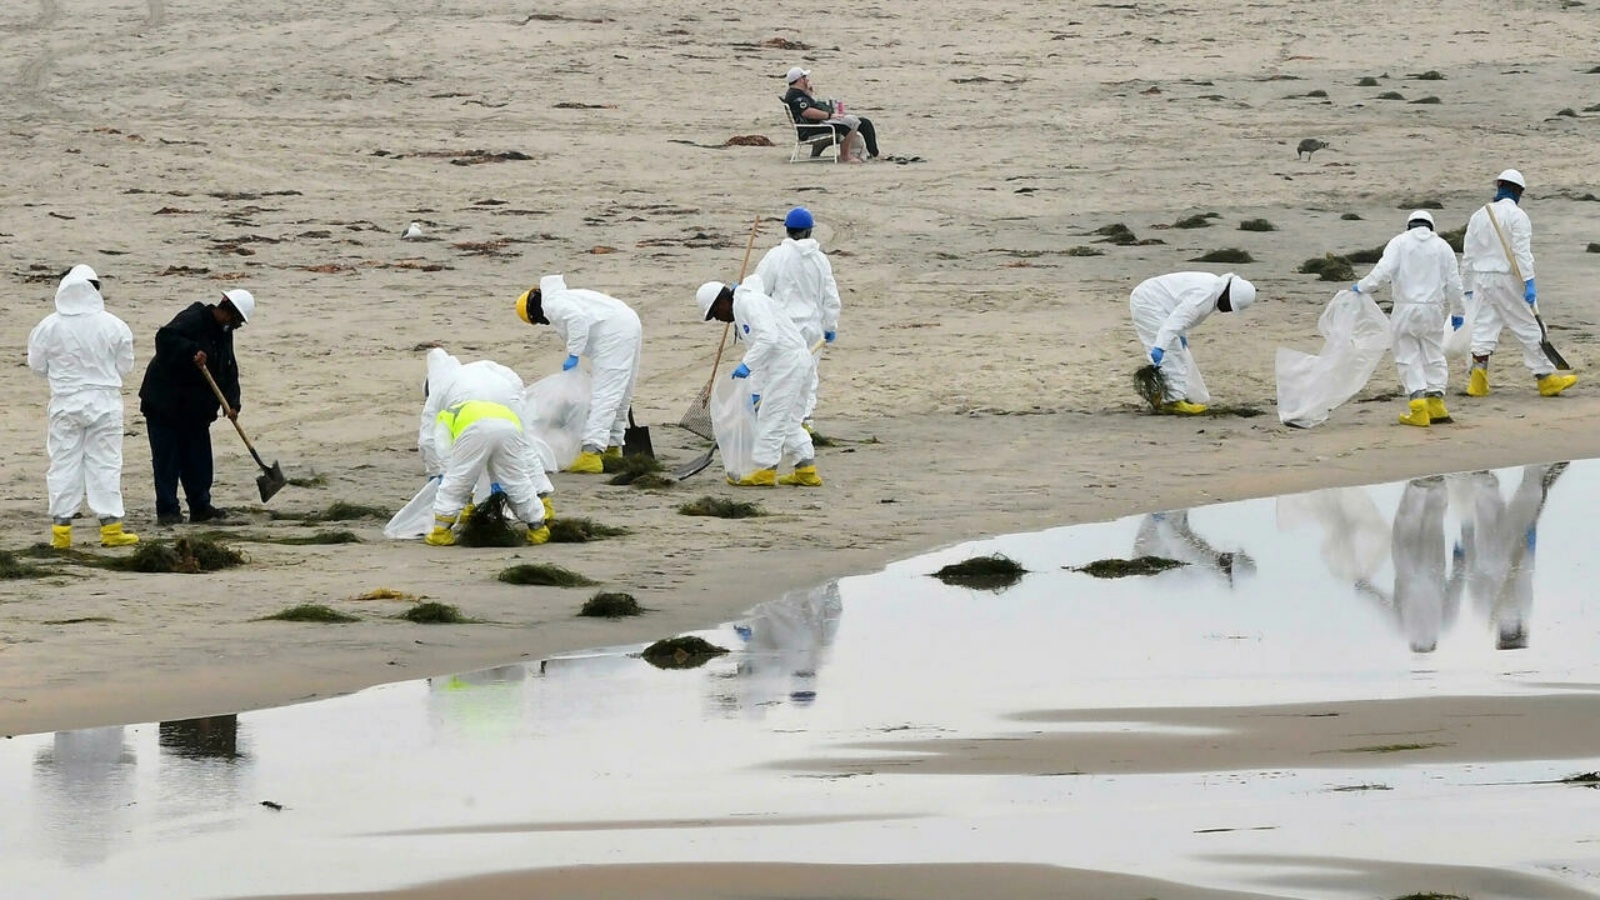 عمال يقومون بتنظيف مساحات طويلة من الشاطئ في الساحل من مدينة لوس أنجلوس، في منطقة معروفة برياضة ركوب الأمواج.